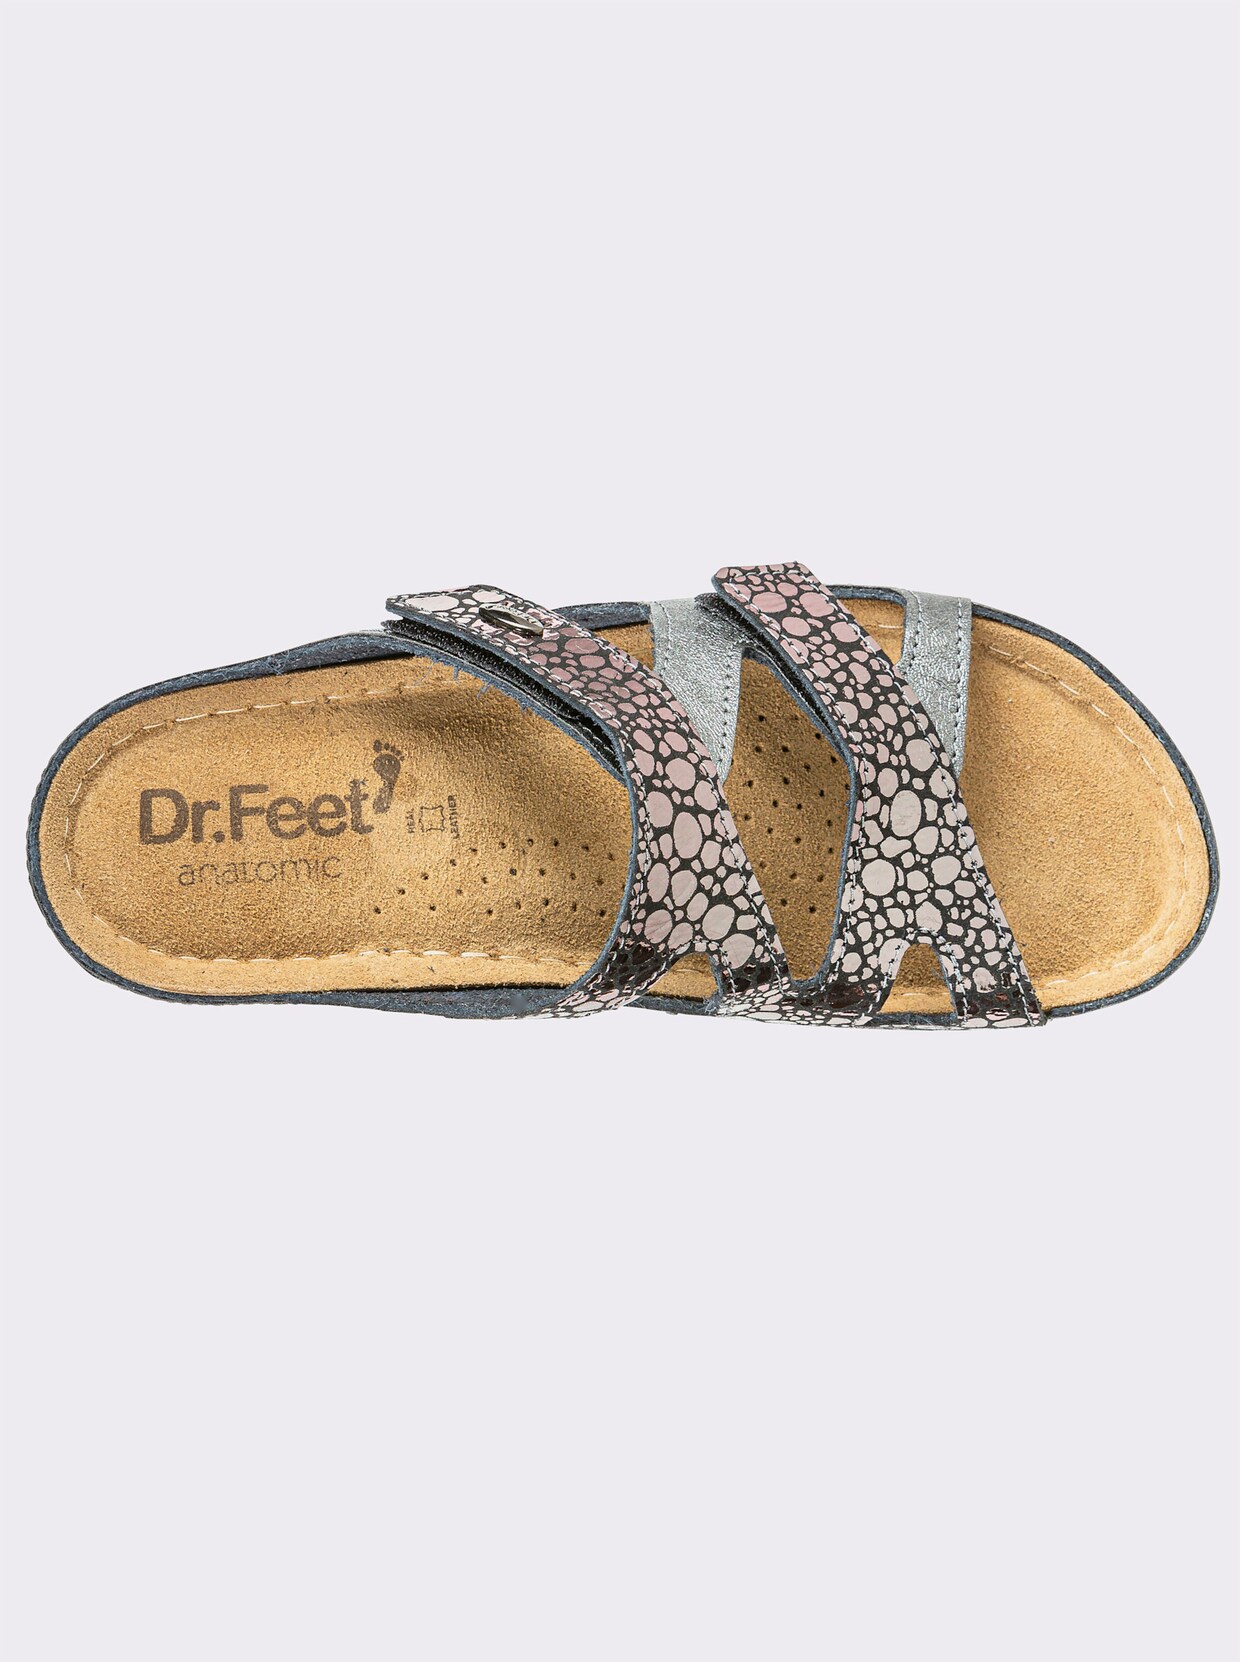 Dr. Feet Pantolette - anthrazit